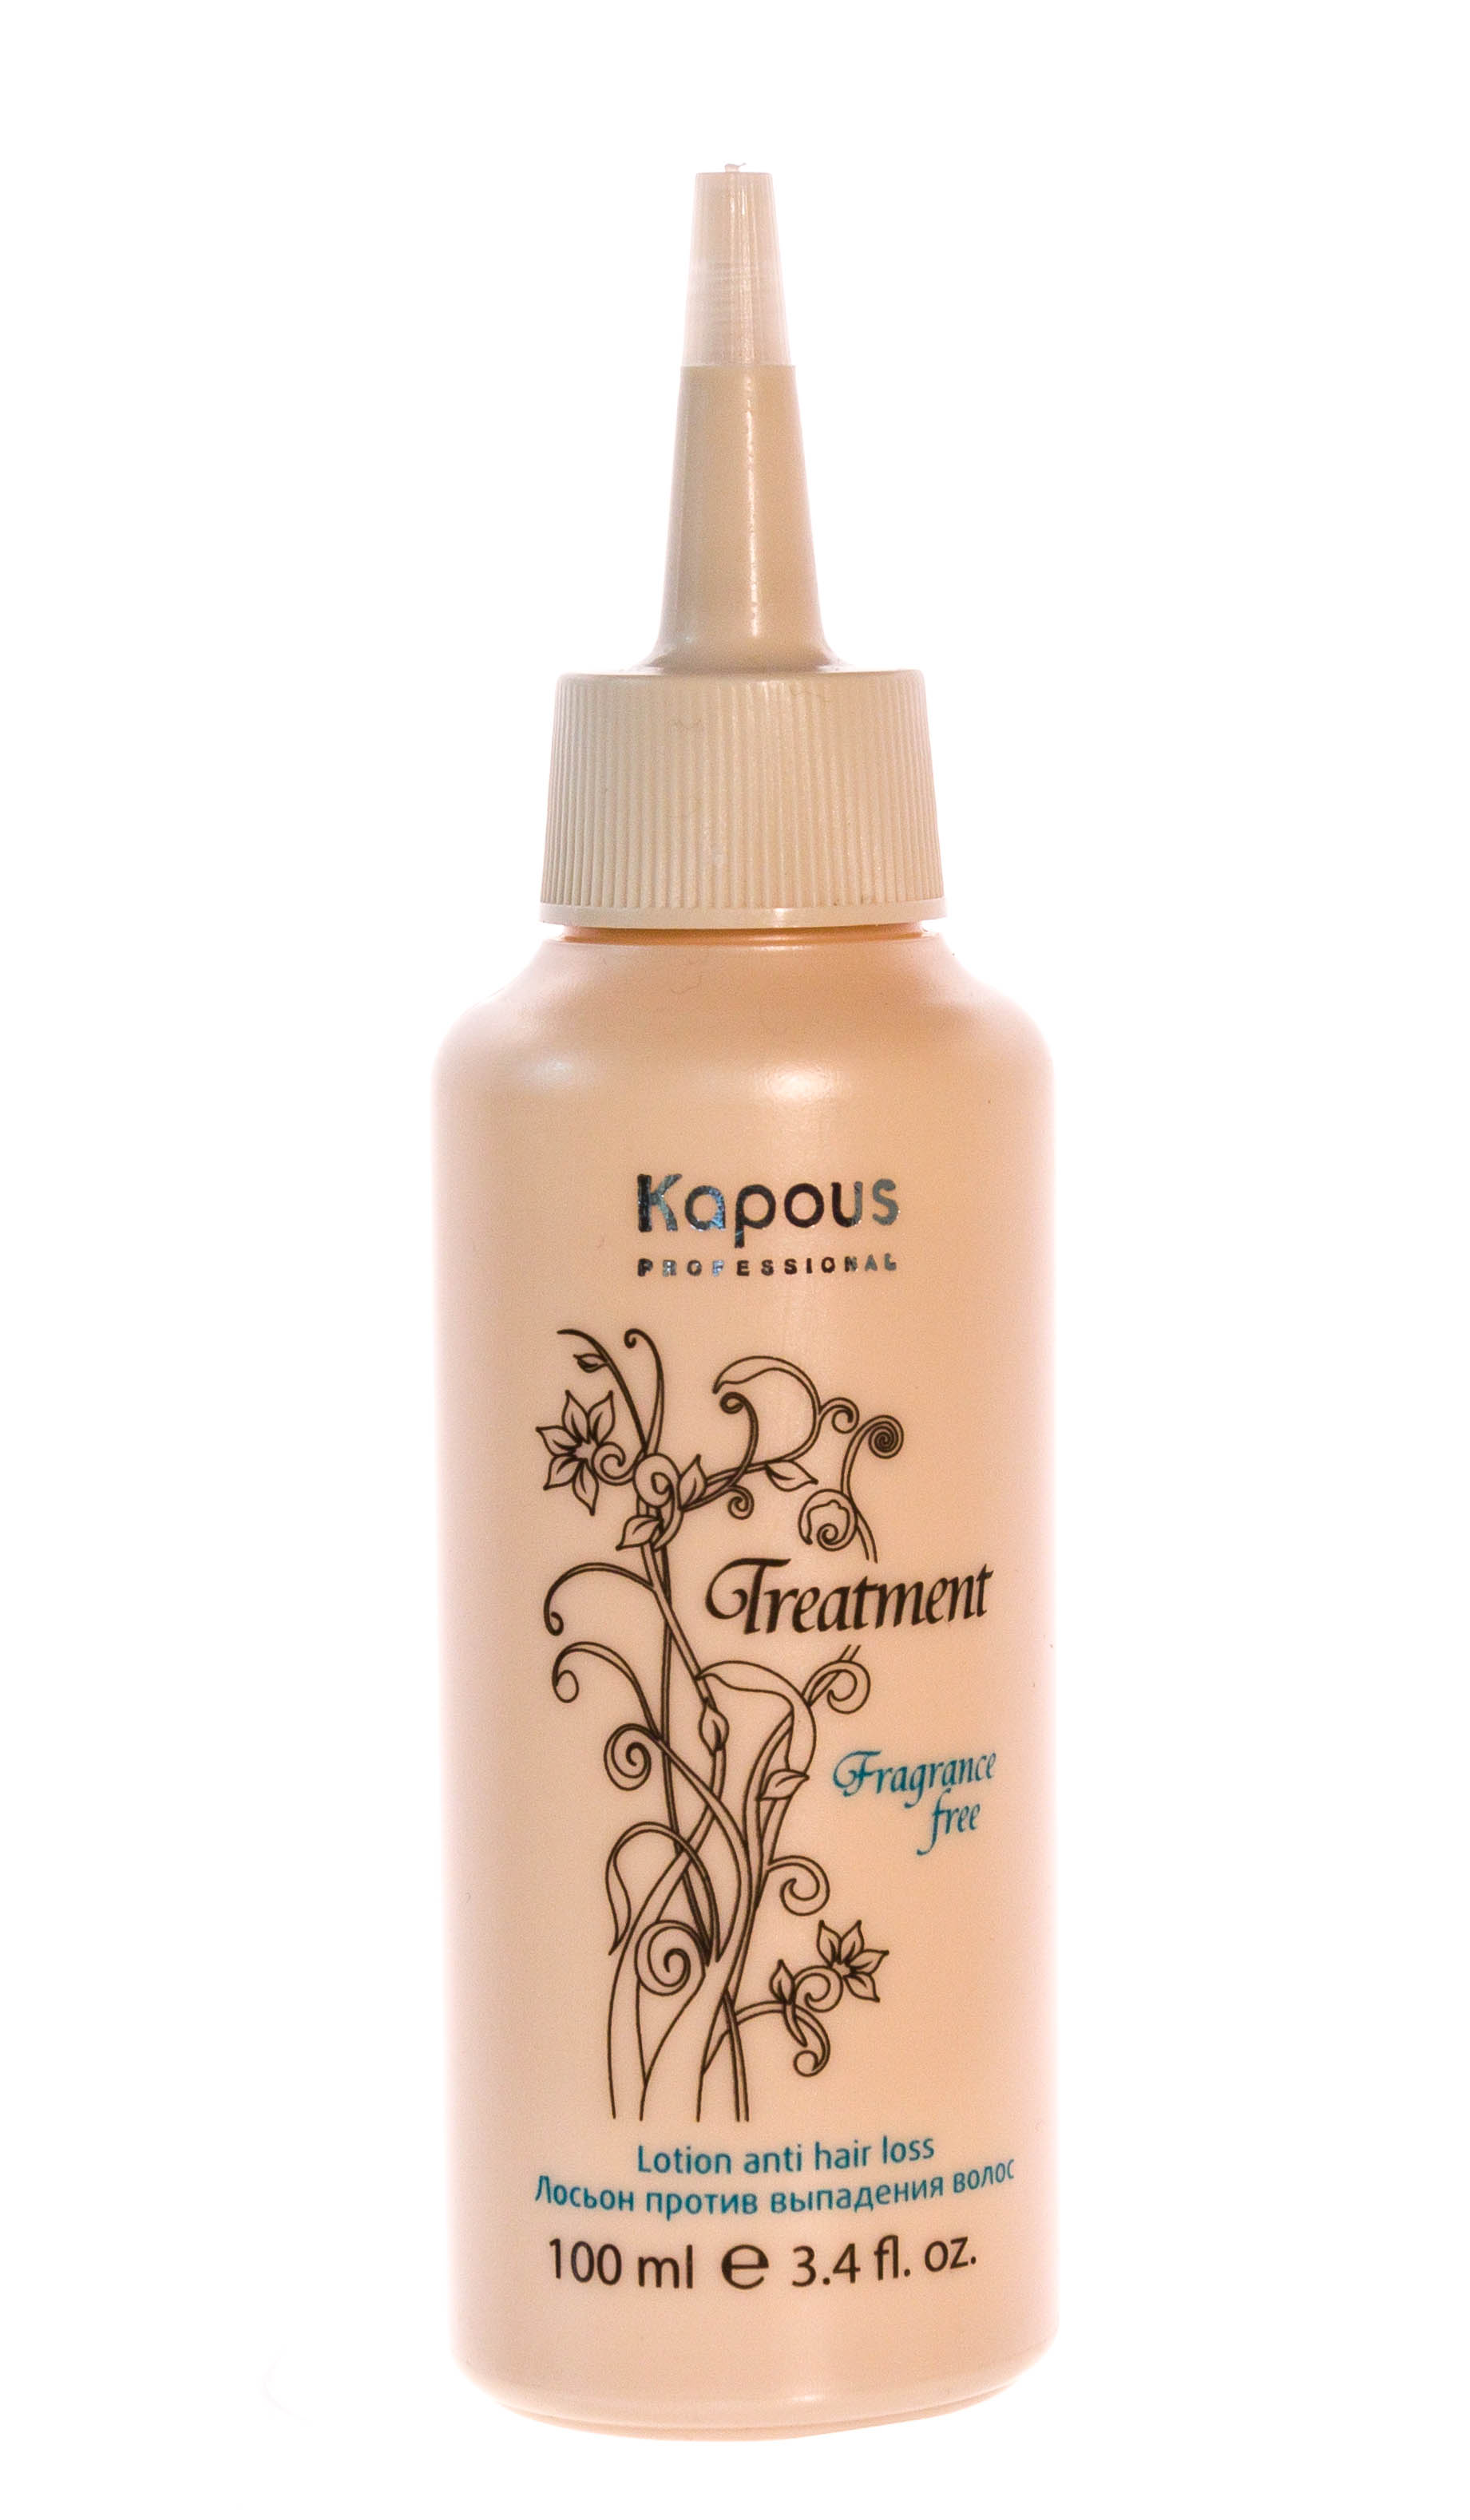 Kapous Professional Лосьон против выпадения волос 100 мл (Kapous Professional, Fragrance free)